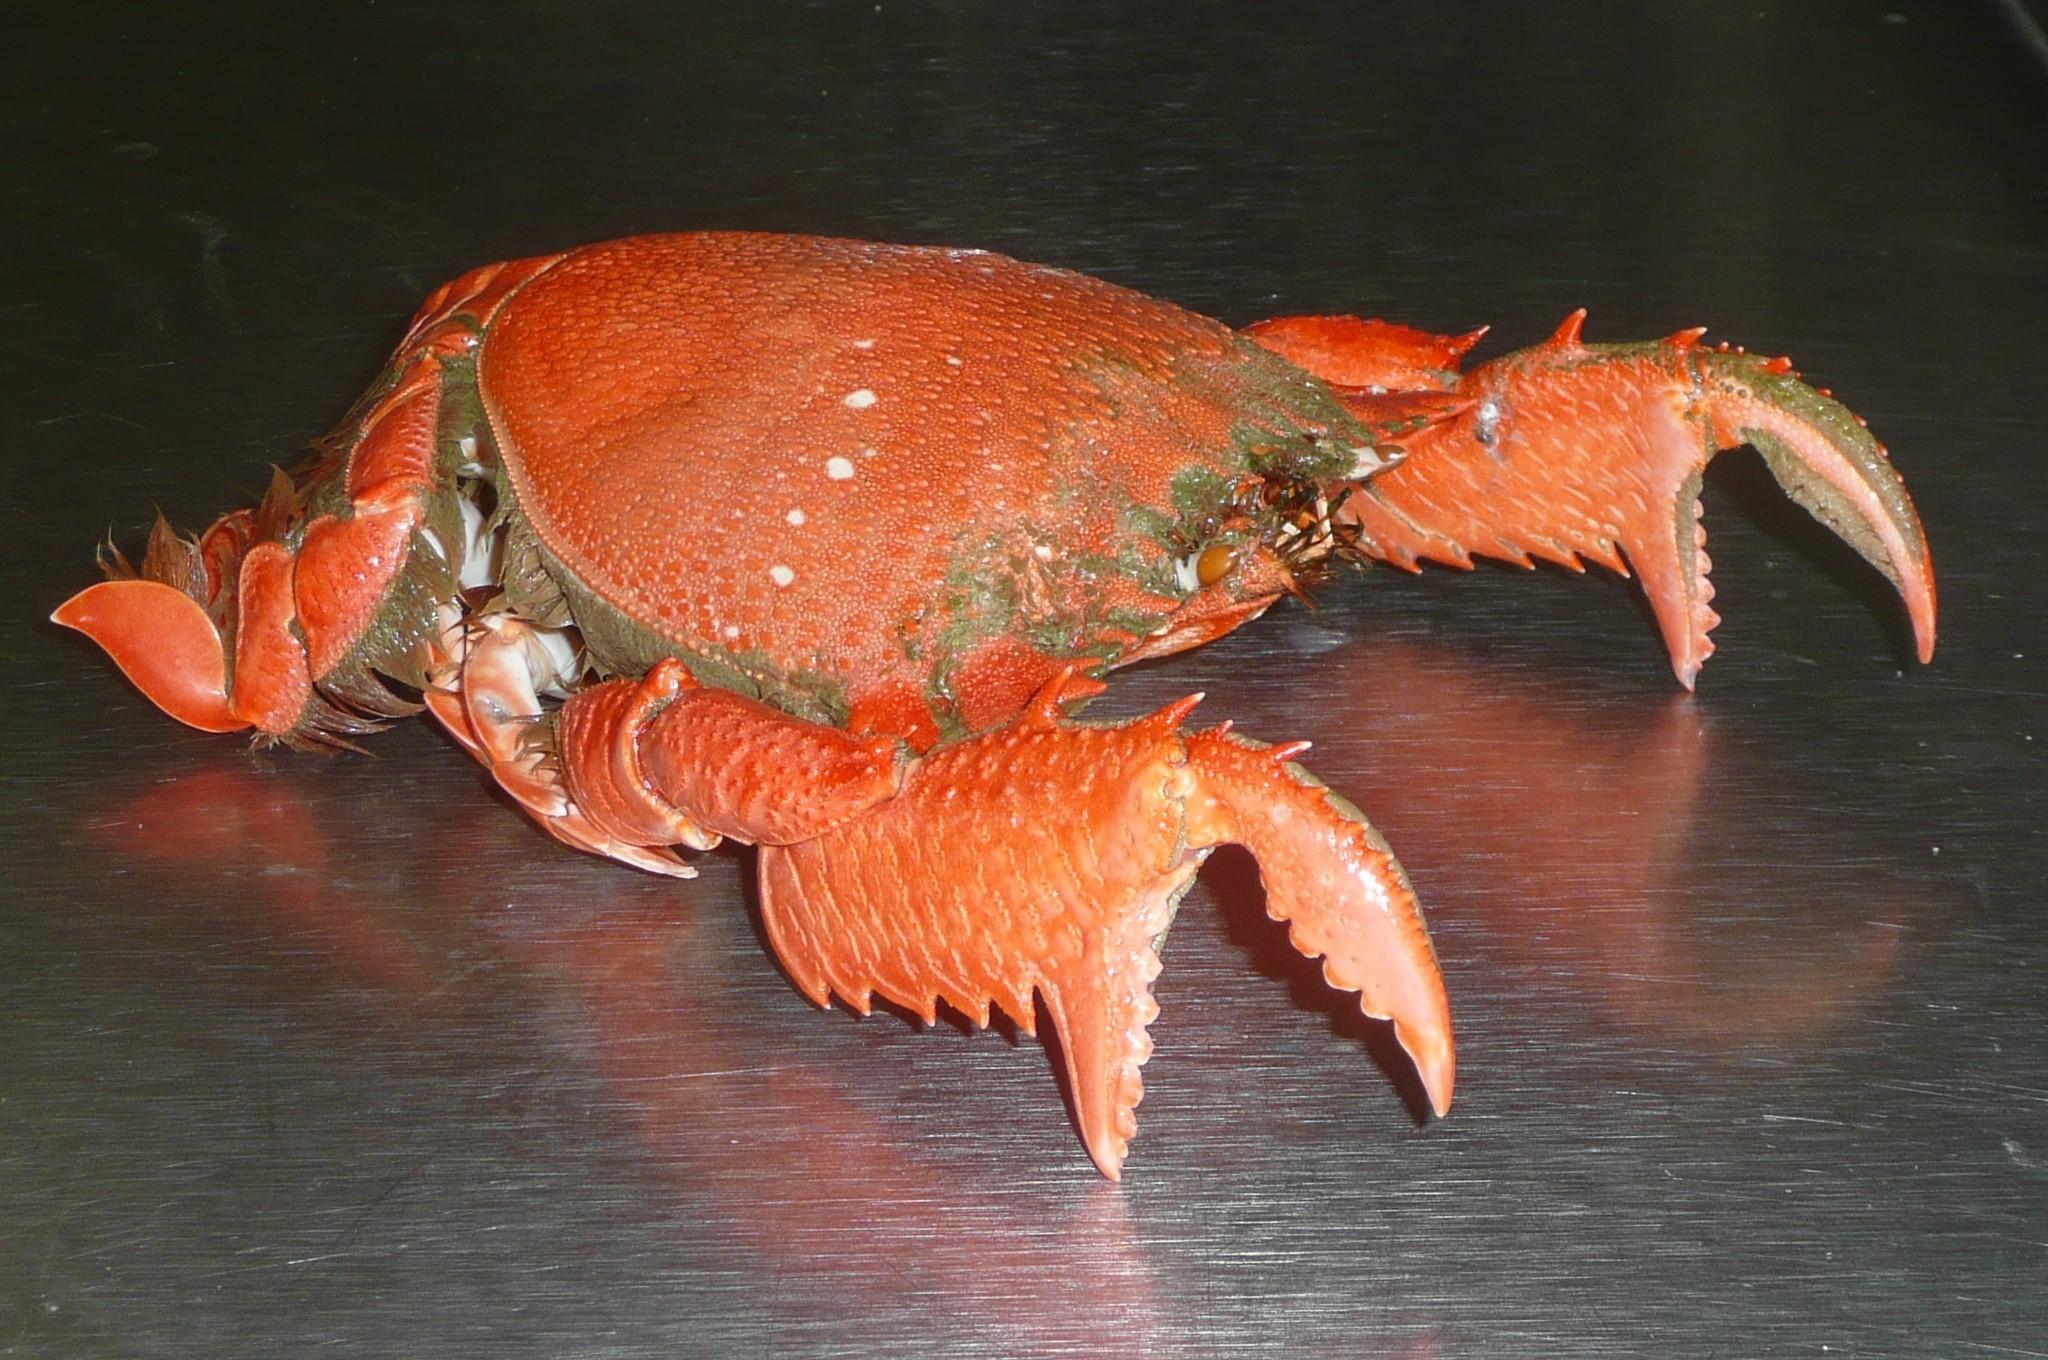 Unique crab